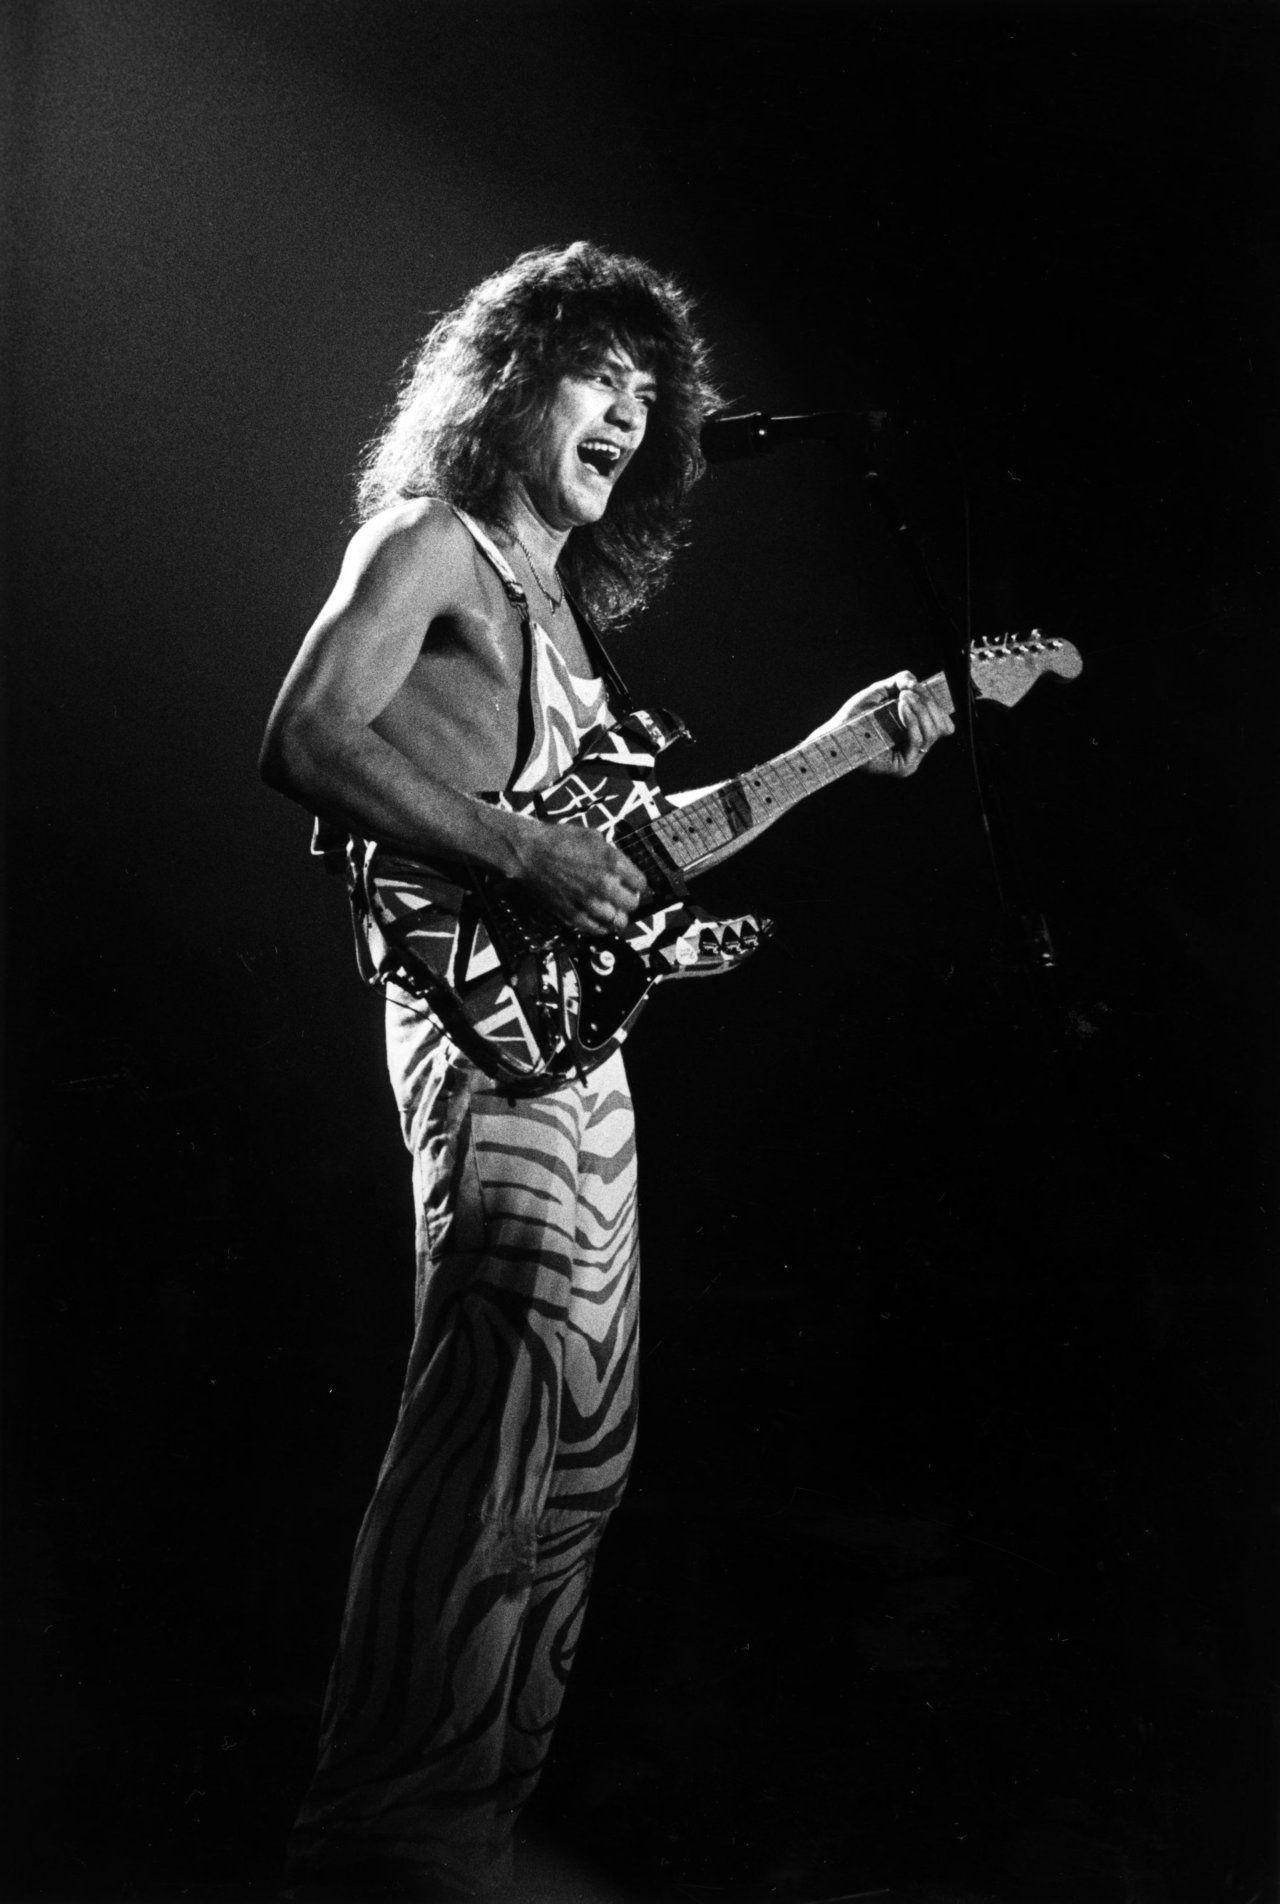 Young Rockstar Eddie Van Halen Background